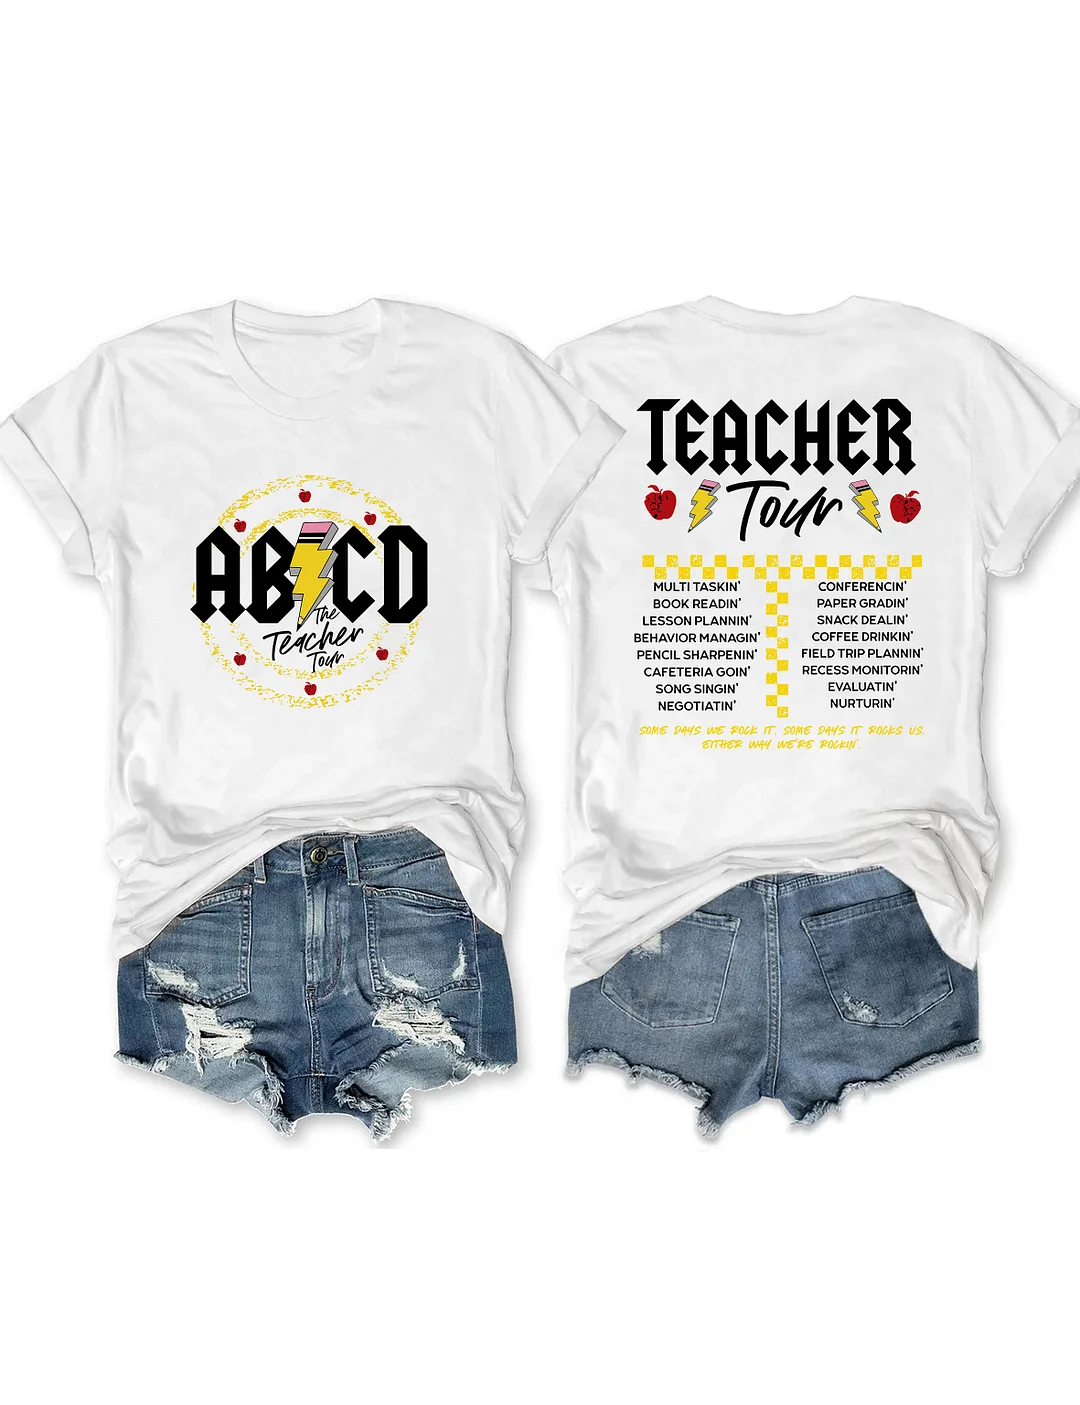 ABCD Teacher Tour T-shirt